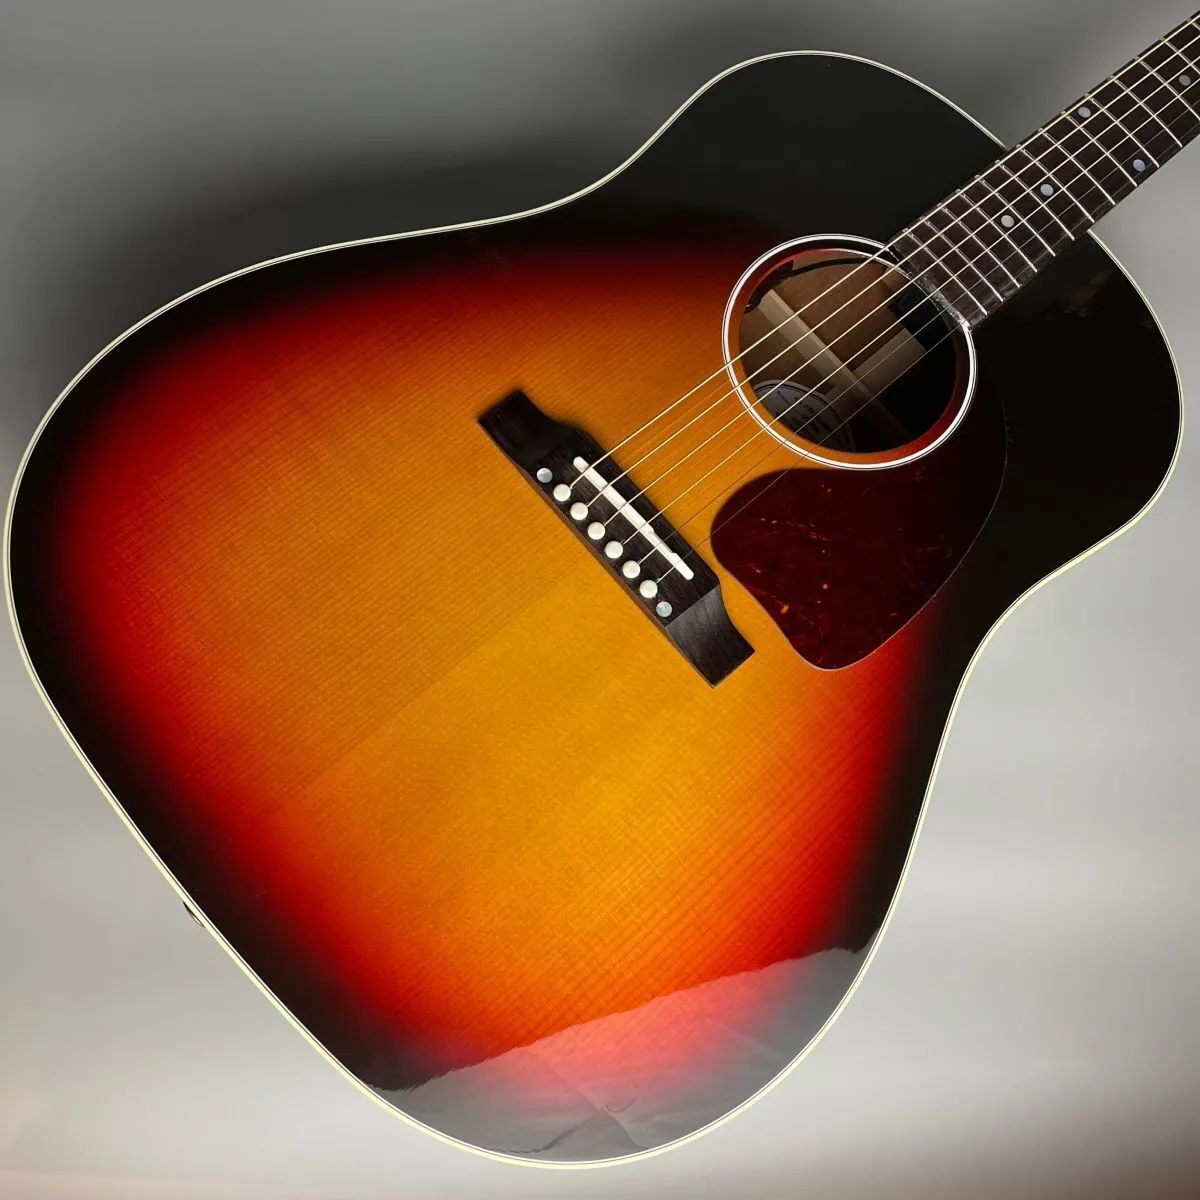 Guitare acoustique Tri-Burst J45 Standard Limited Limited comme les images